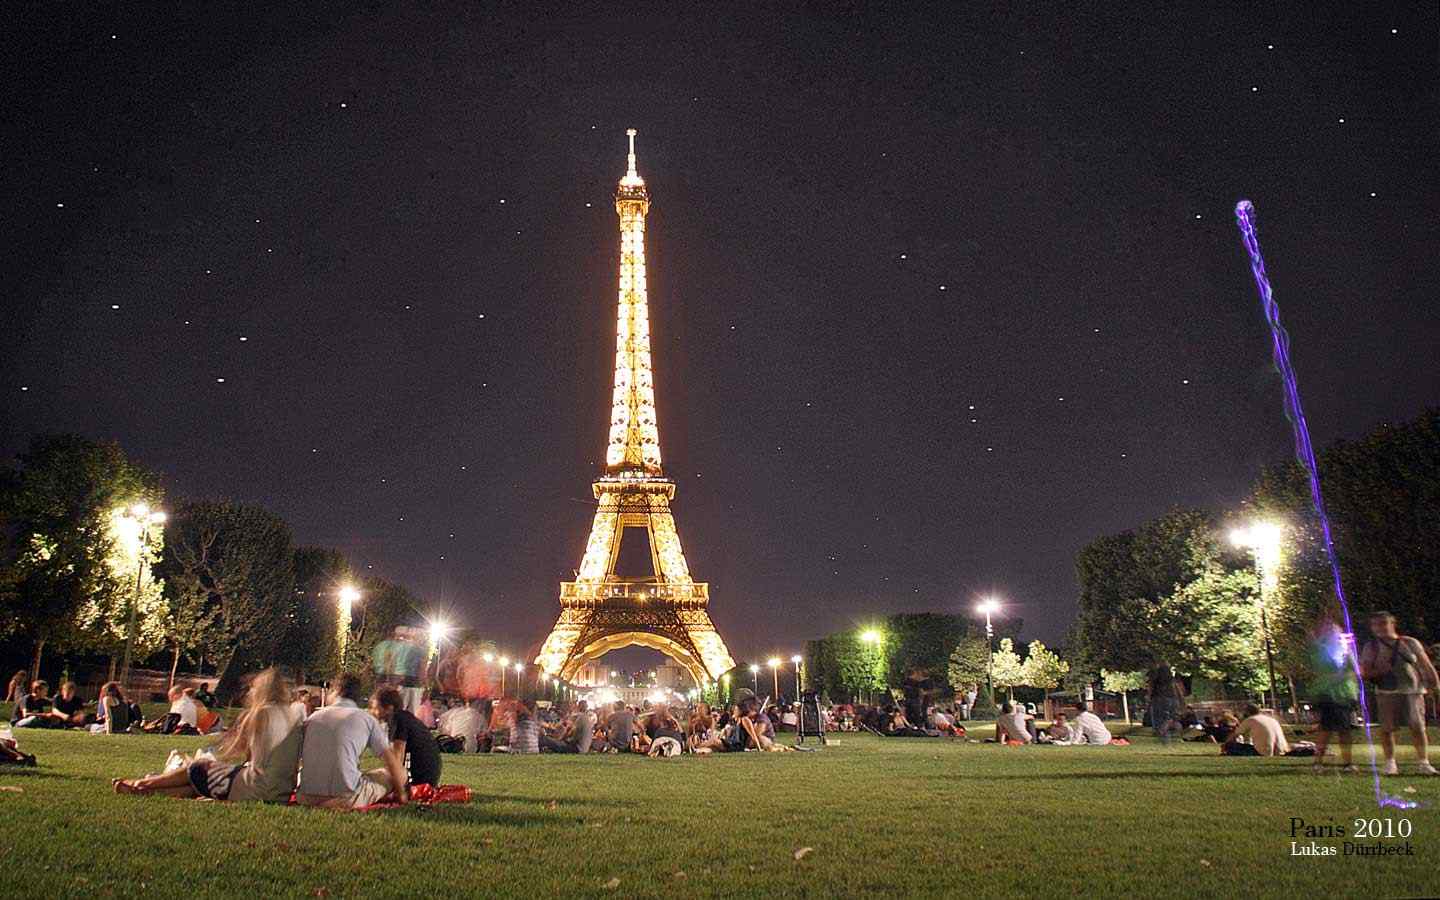 巴黎夜景摄影壁纸